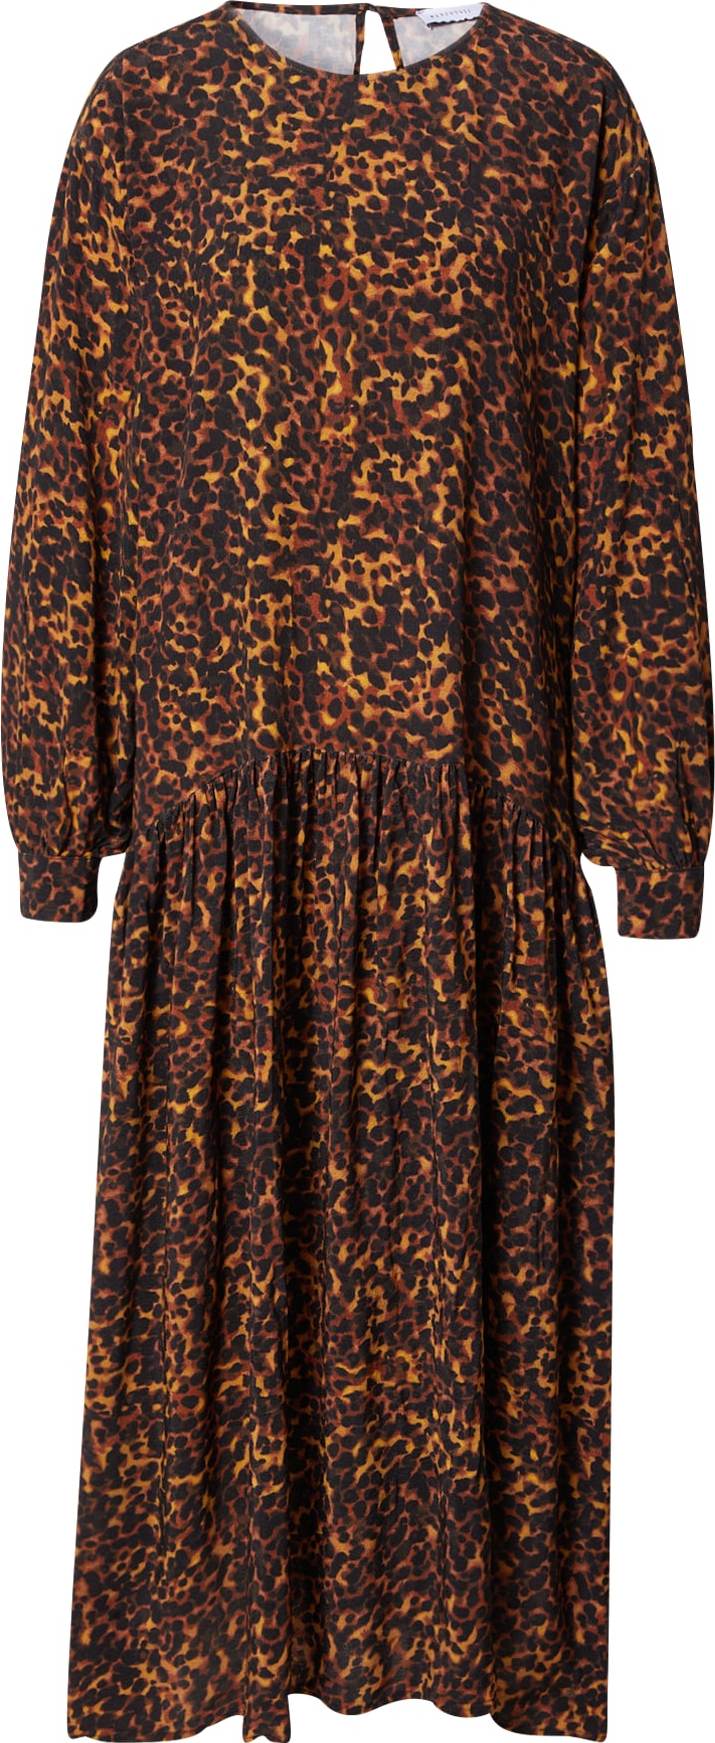 Warehouse Košilové šaty karamelová / koňaková / černá